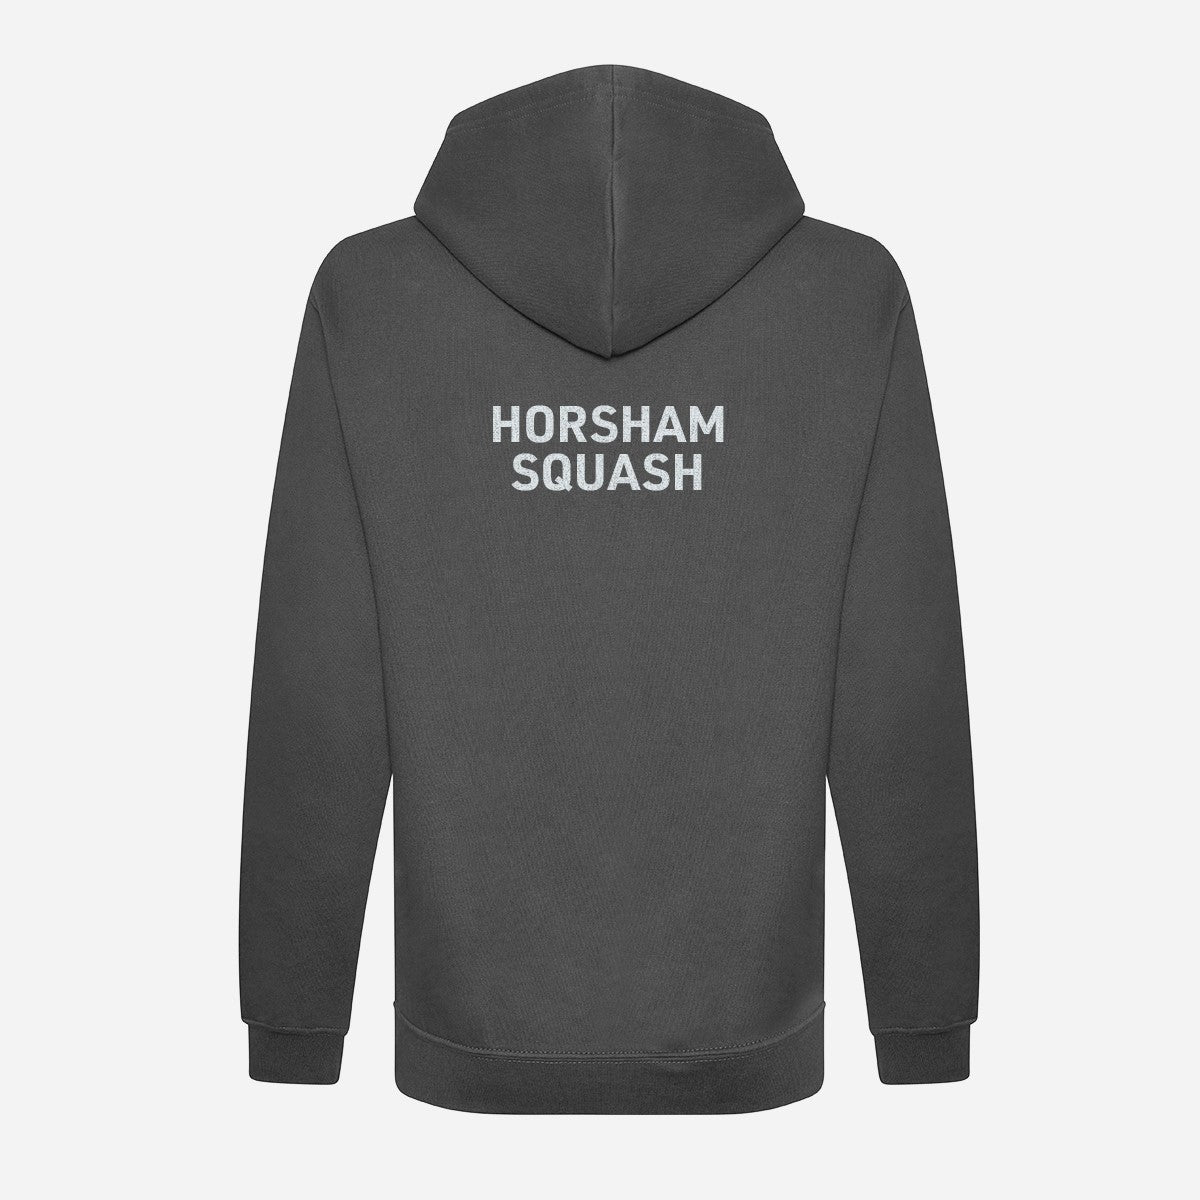 Horsham Squash Club unisex Organic Hoodie